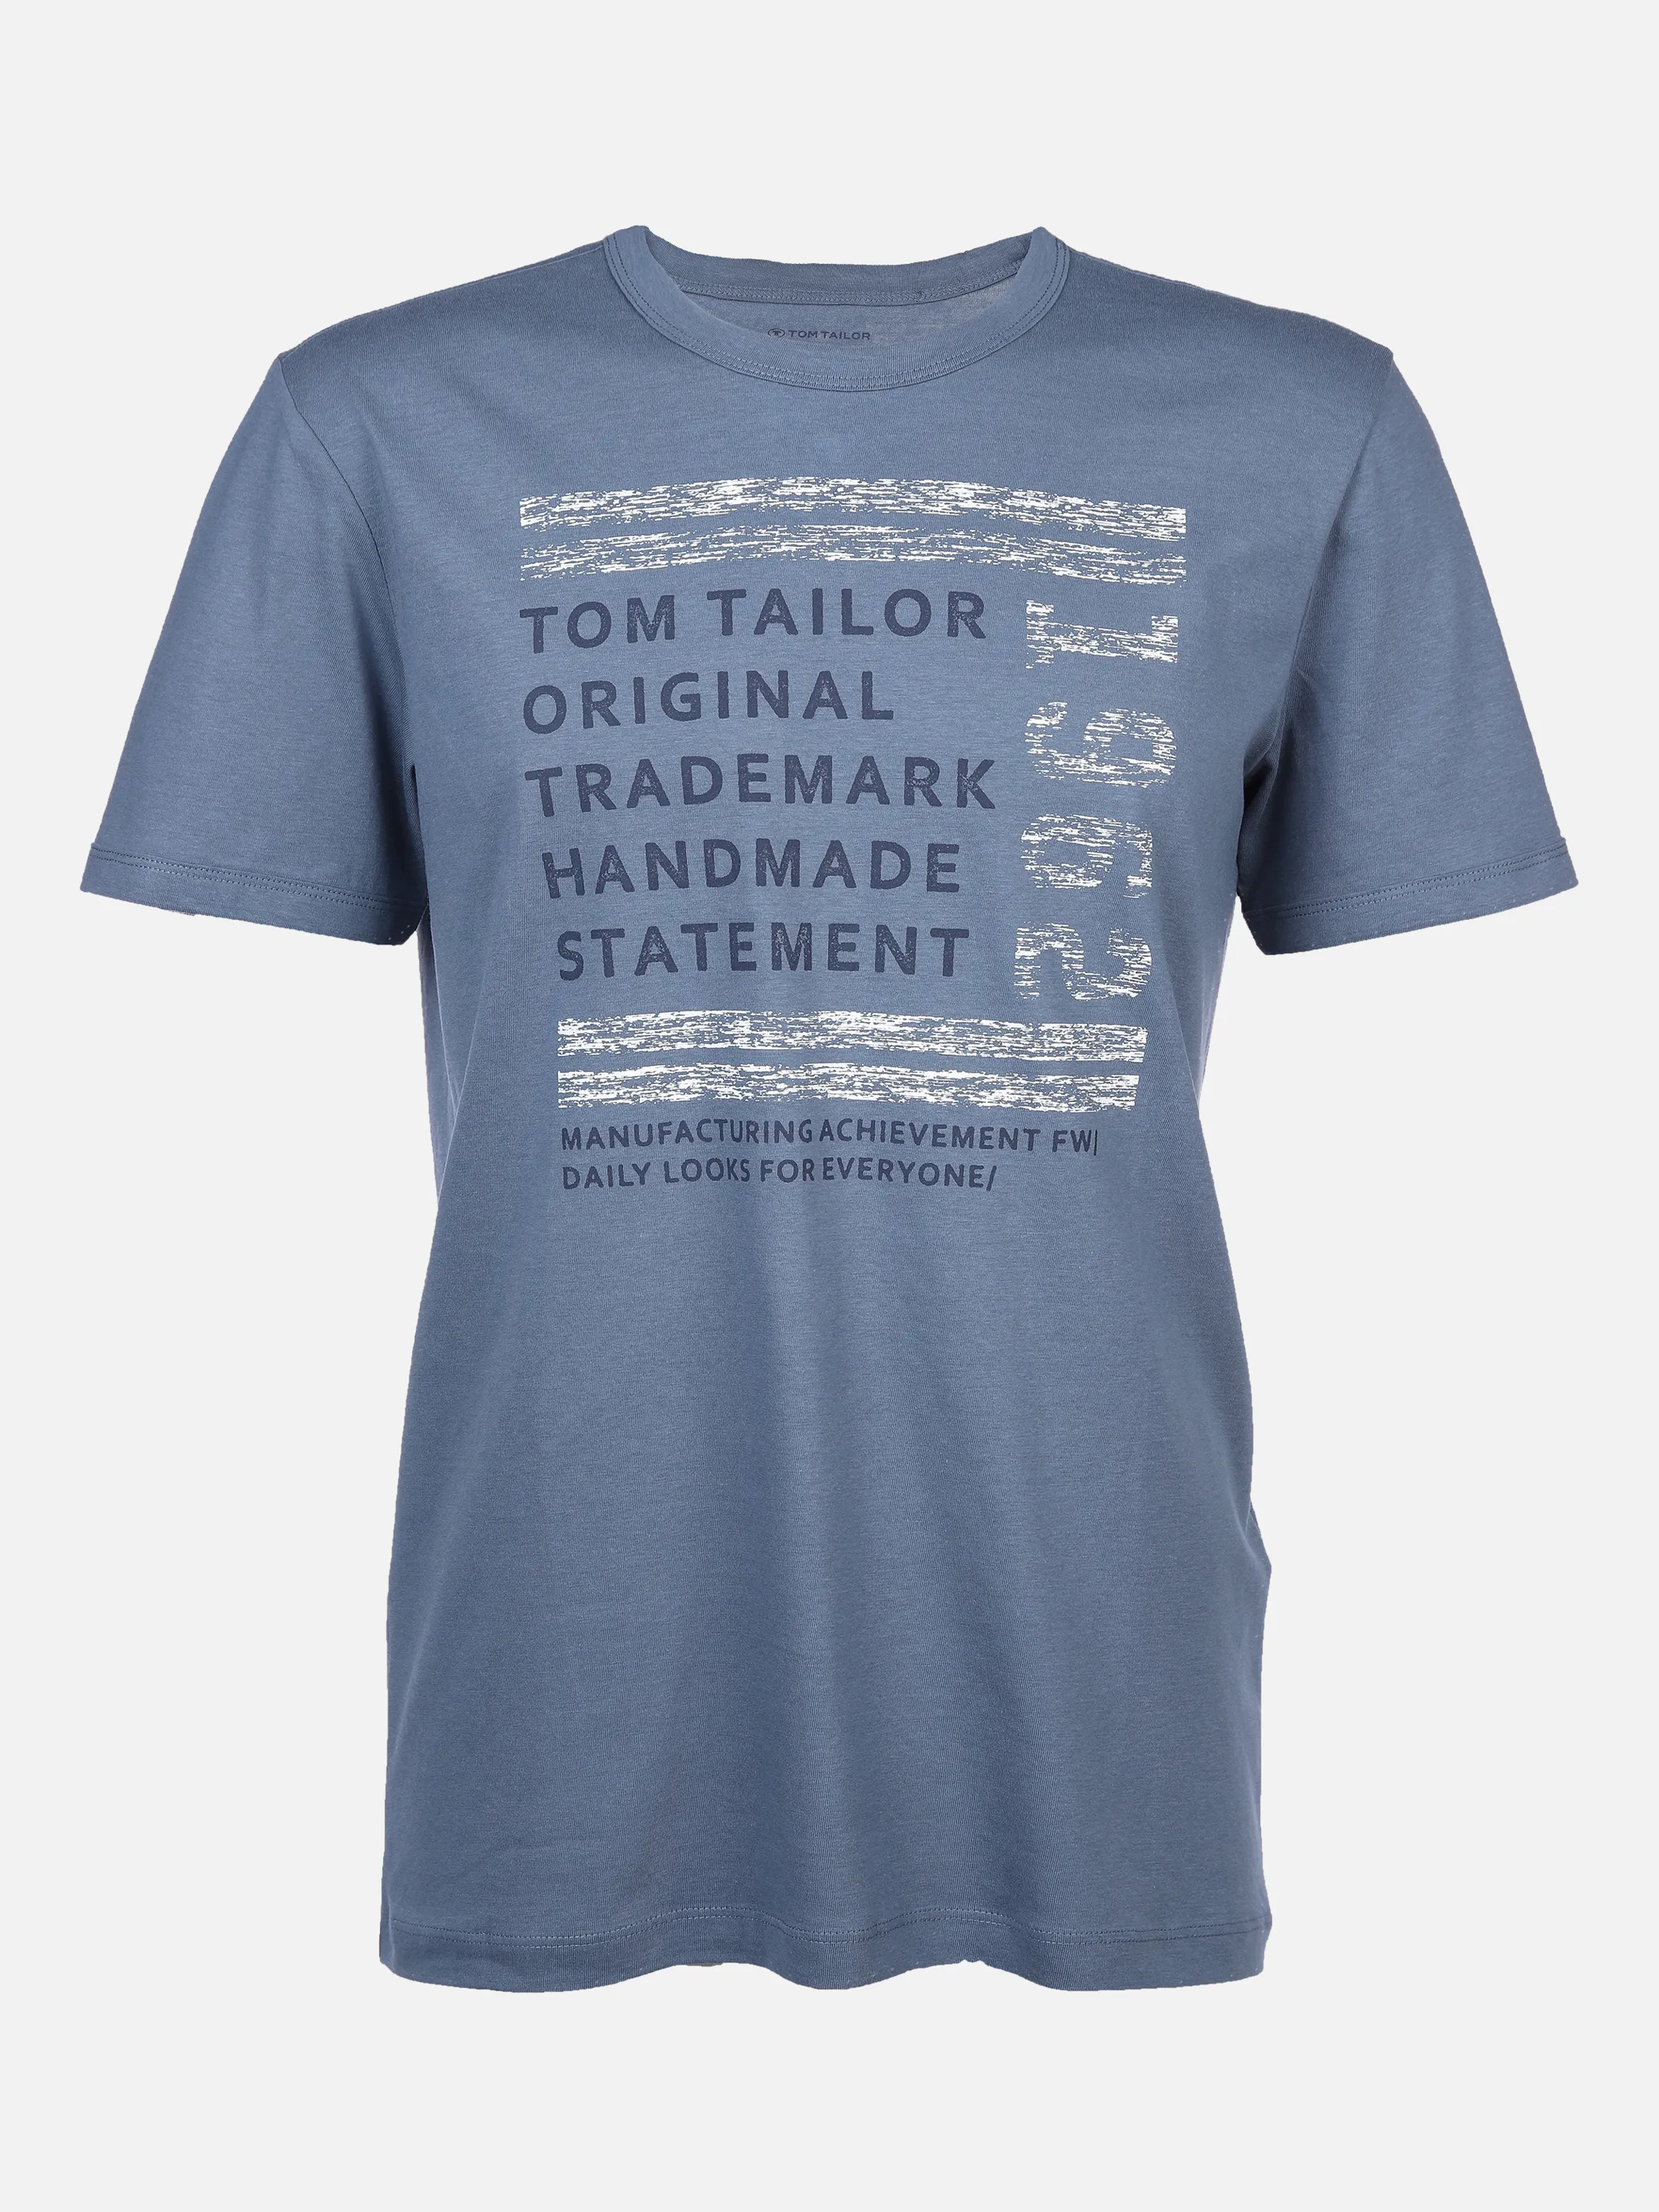 Tom Tailor 1032906 printed tshirt Blau 869524 10877 1